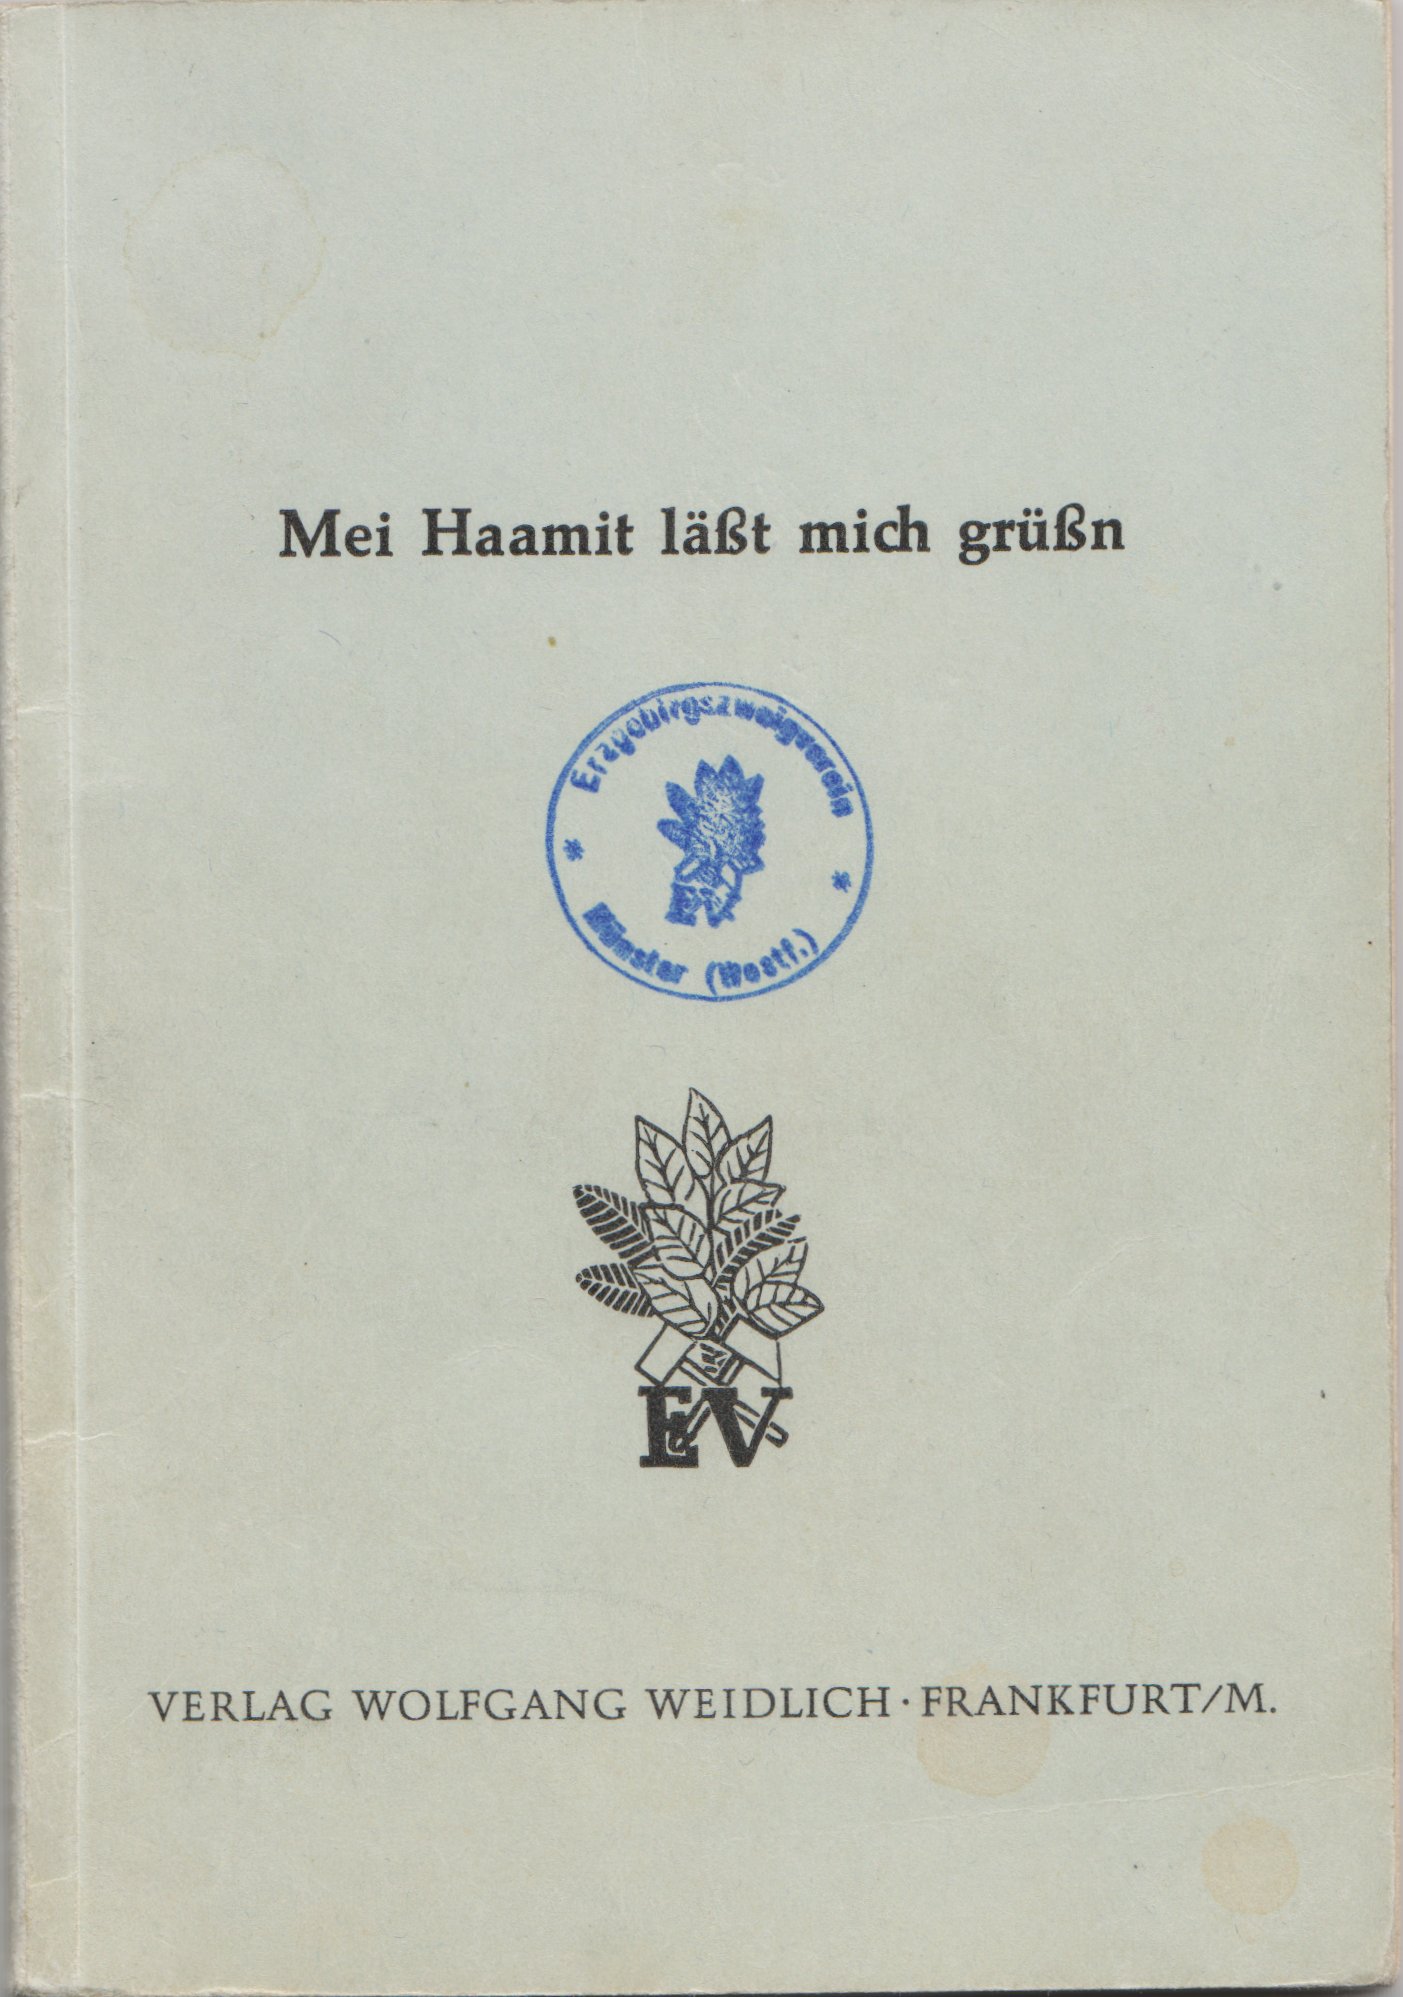 Mei Haamit läßt mich grüßn - Liederbuch des Erzgebirgsvereins. (Archiv SAXONIA-FREIBERG-STIFTUNG CC BY-NC-SA)